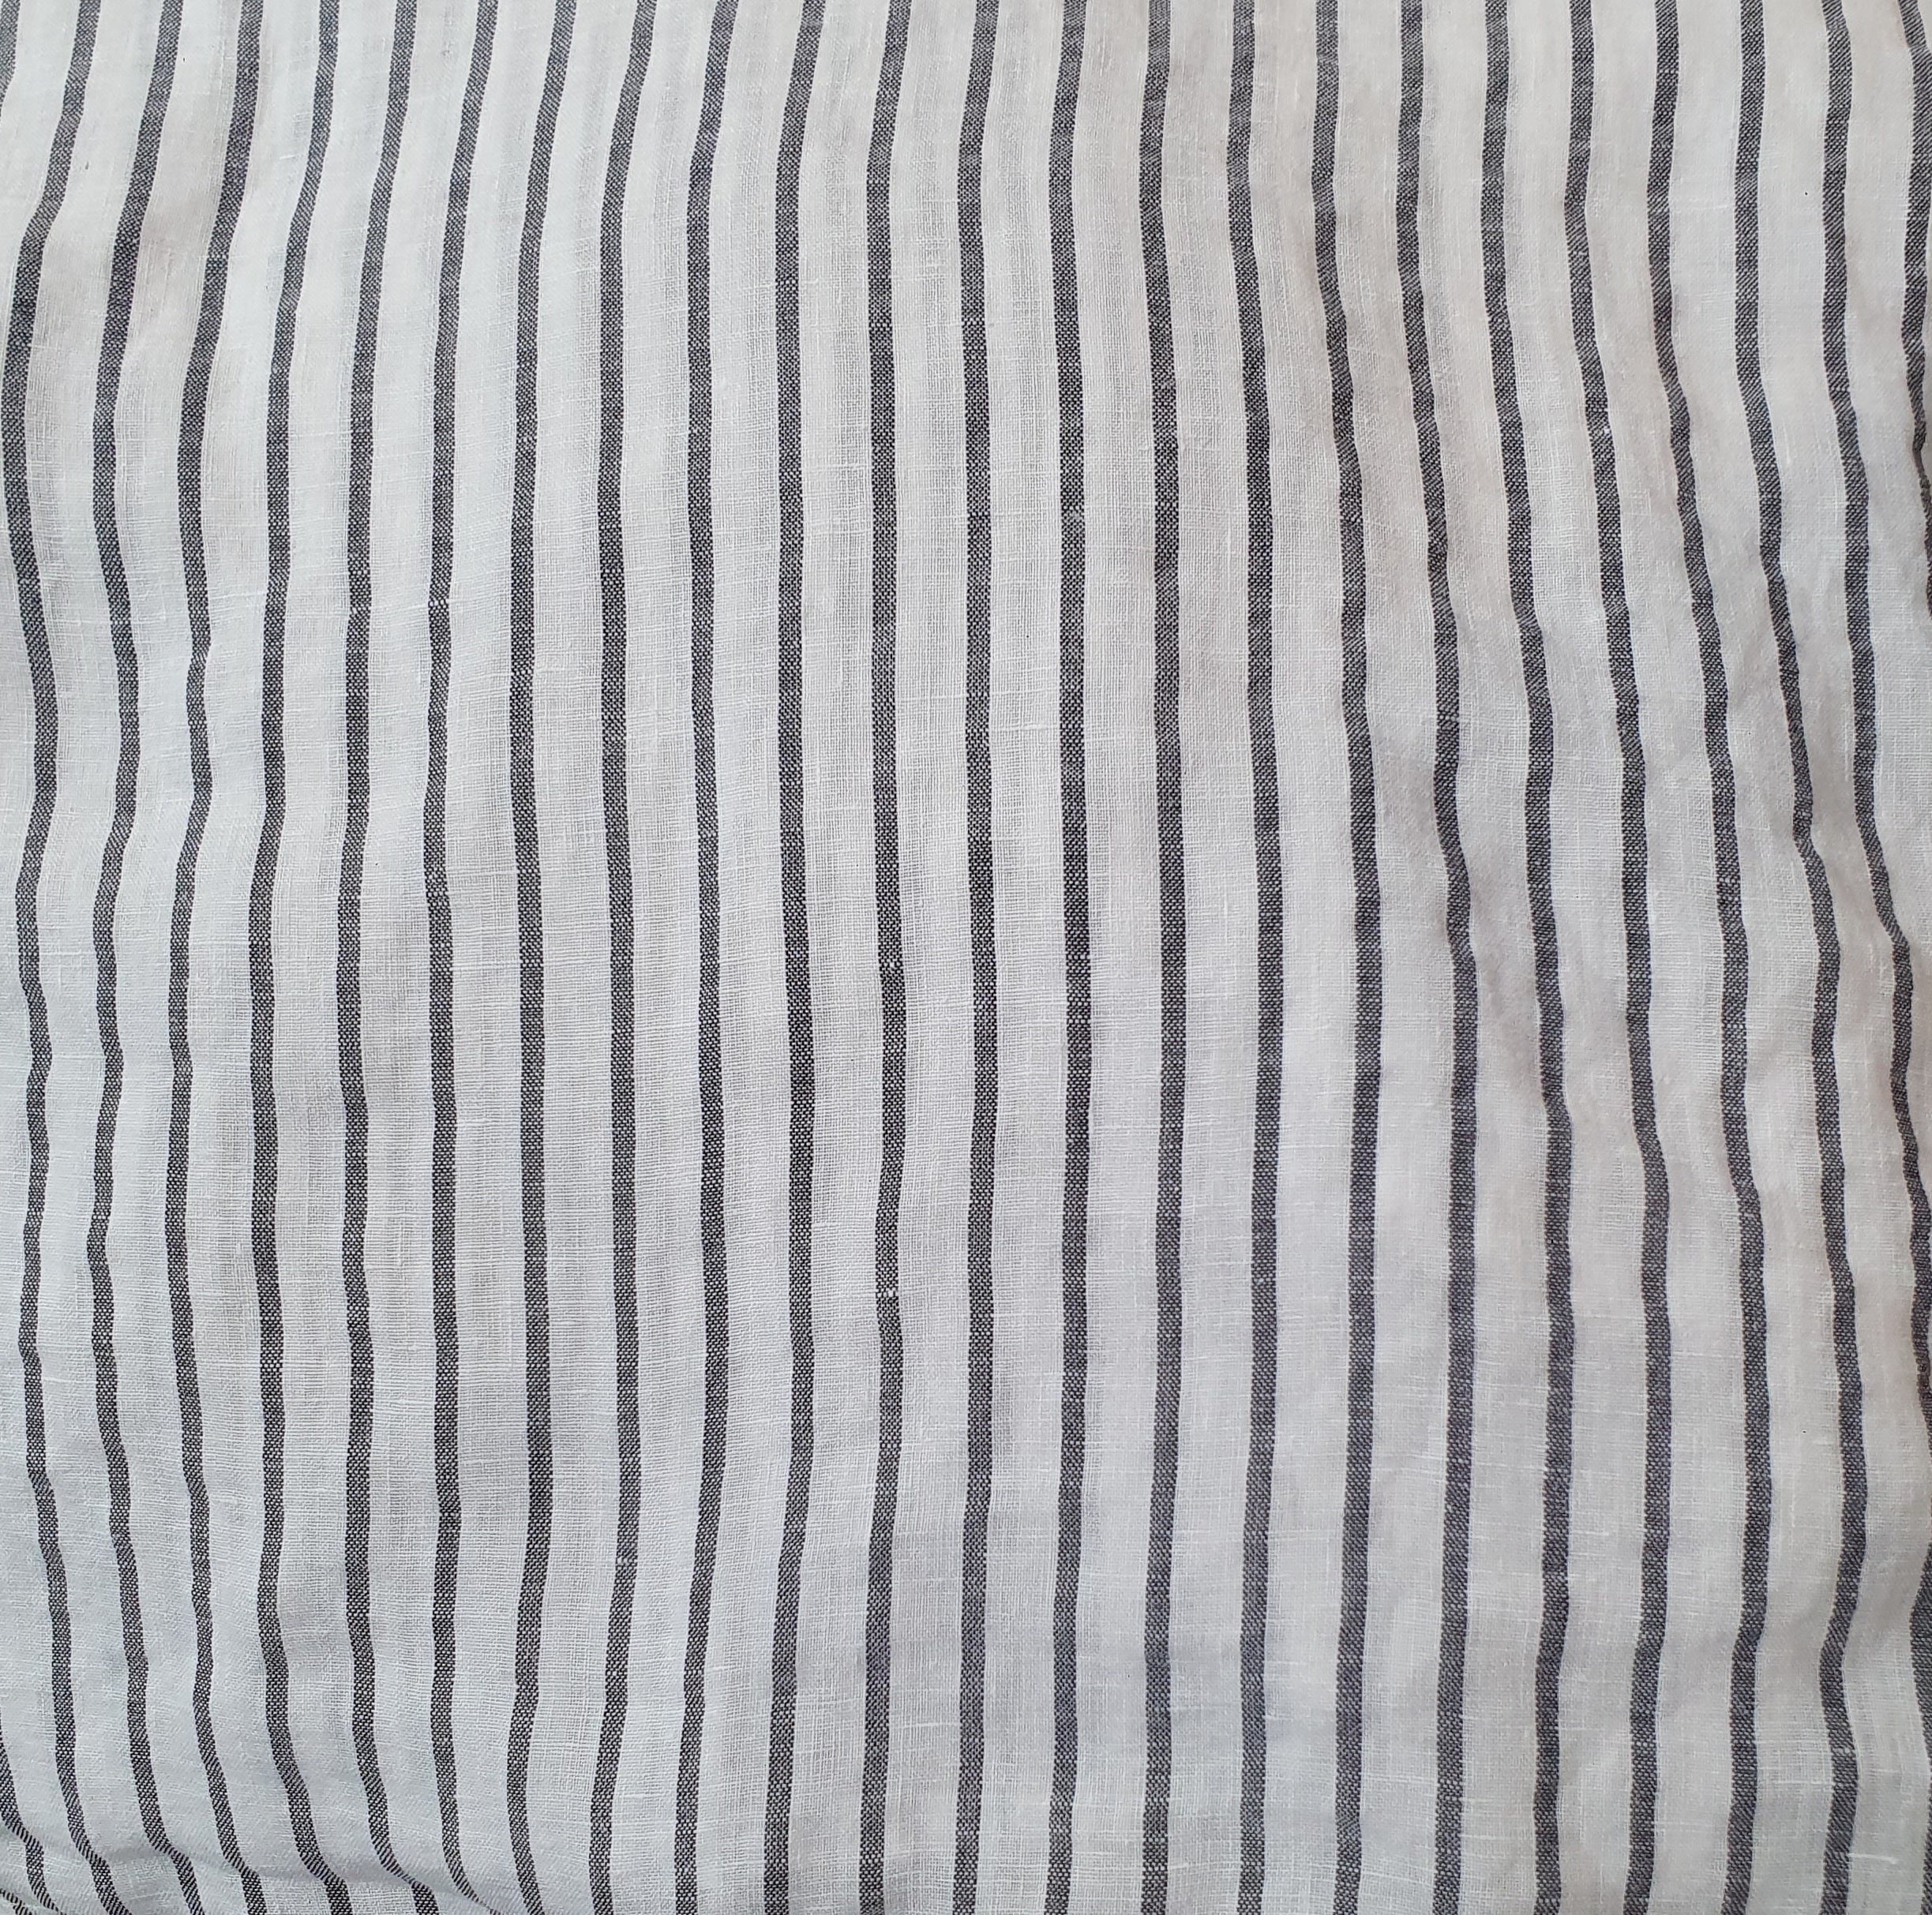 Frederic Côte striped linen skirt – Montaigne Paris